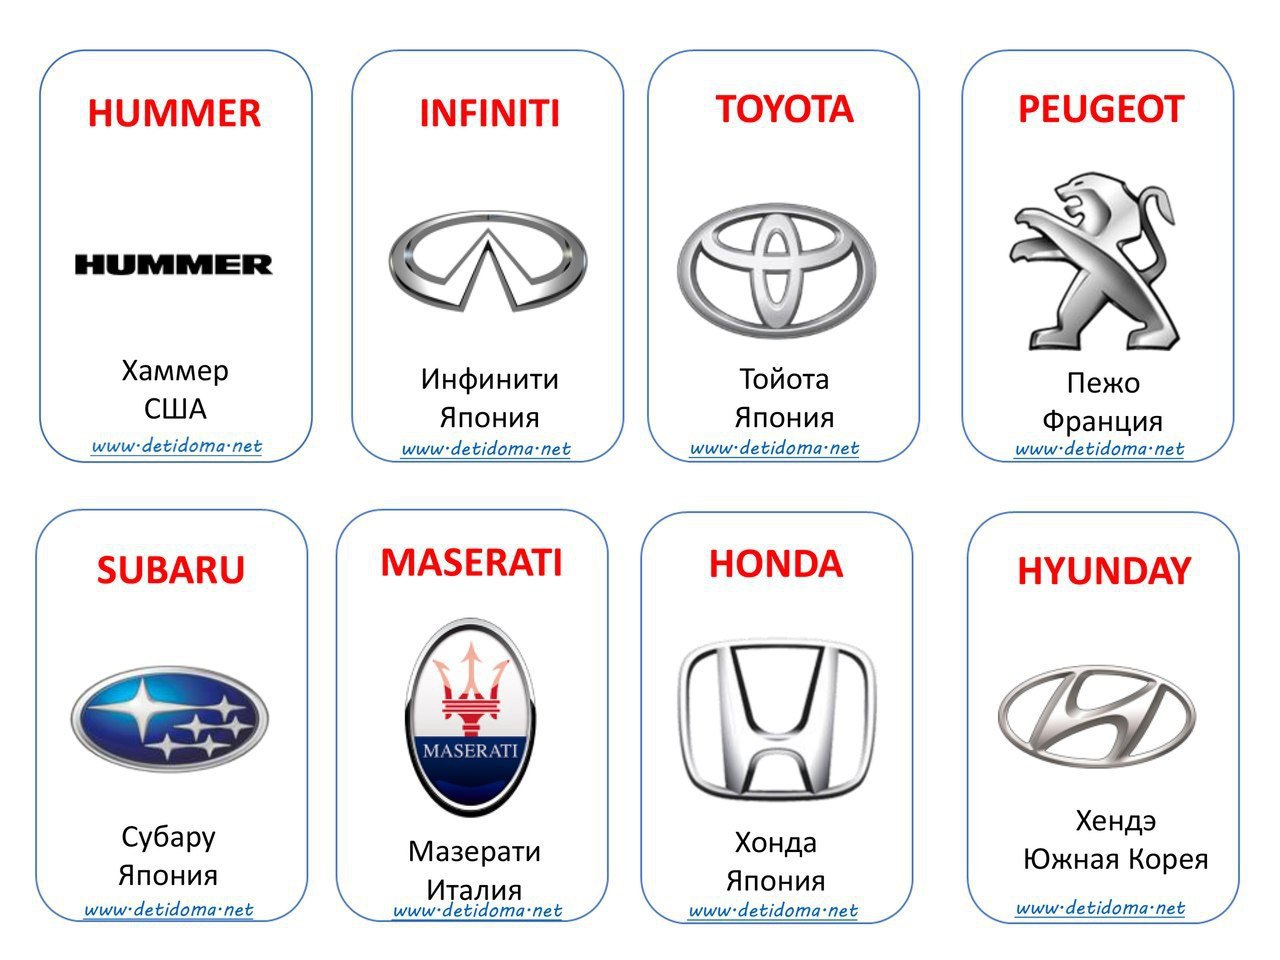 Марки машин и названия на русском языке